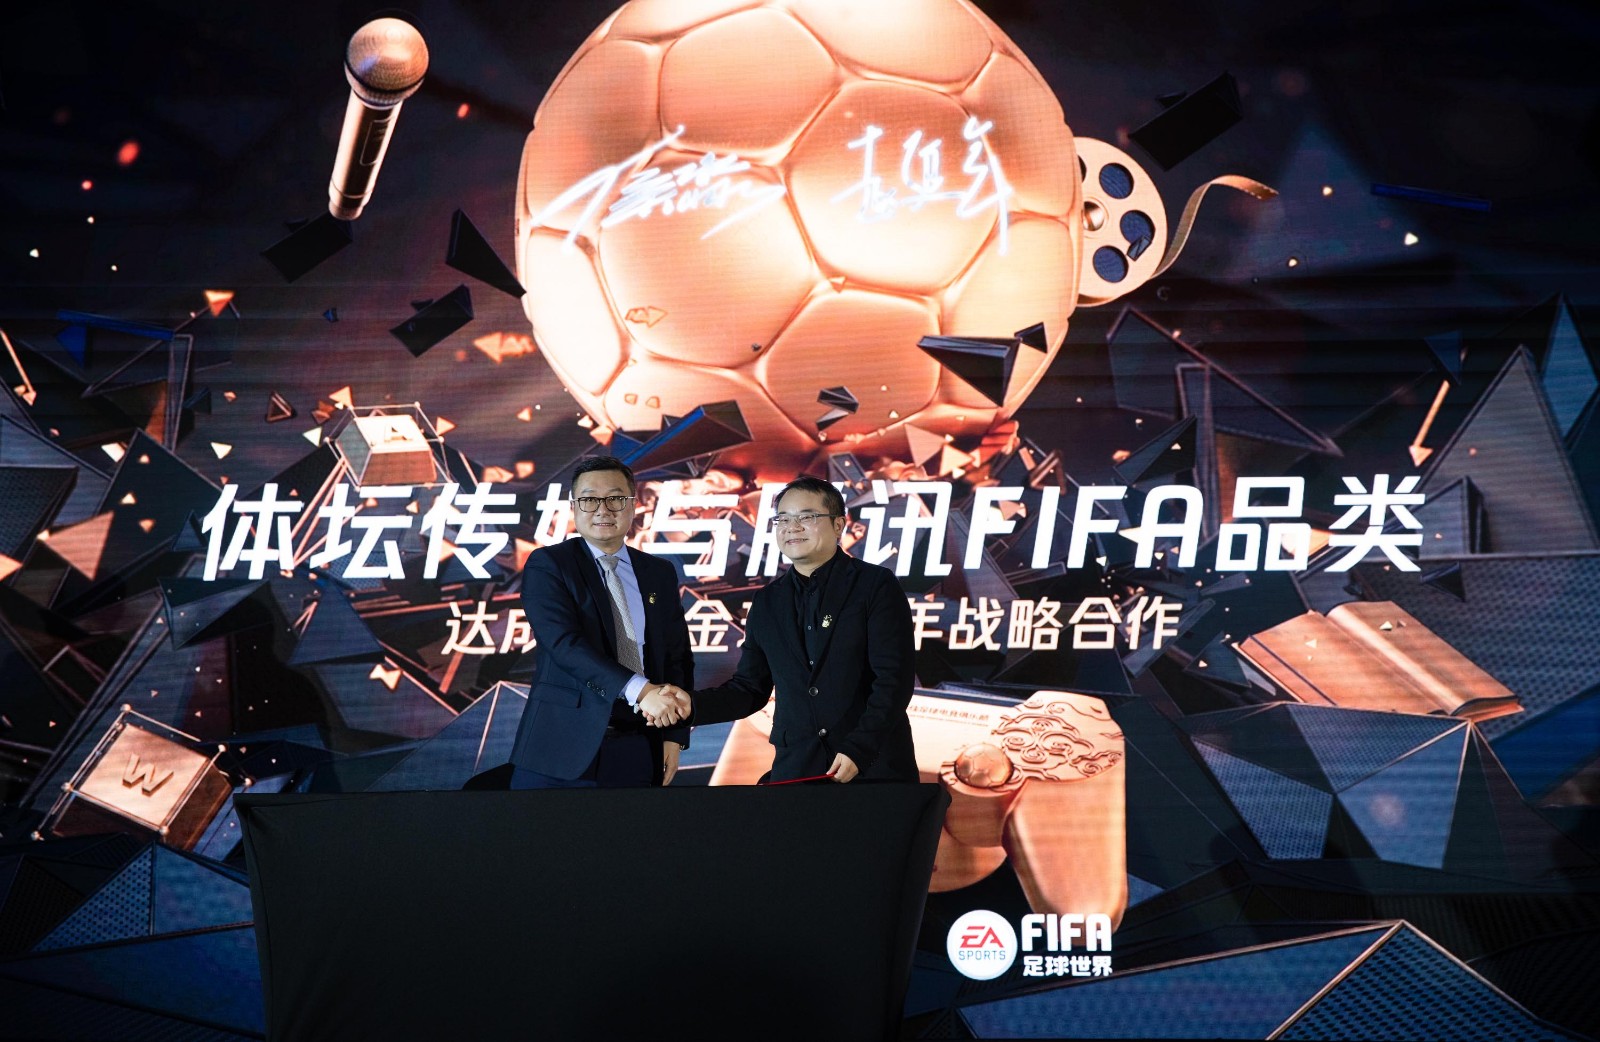 2018年FIFA品类年度盛典&中国金球奖精彩图集欣赏